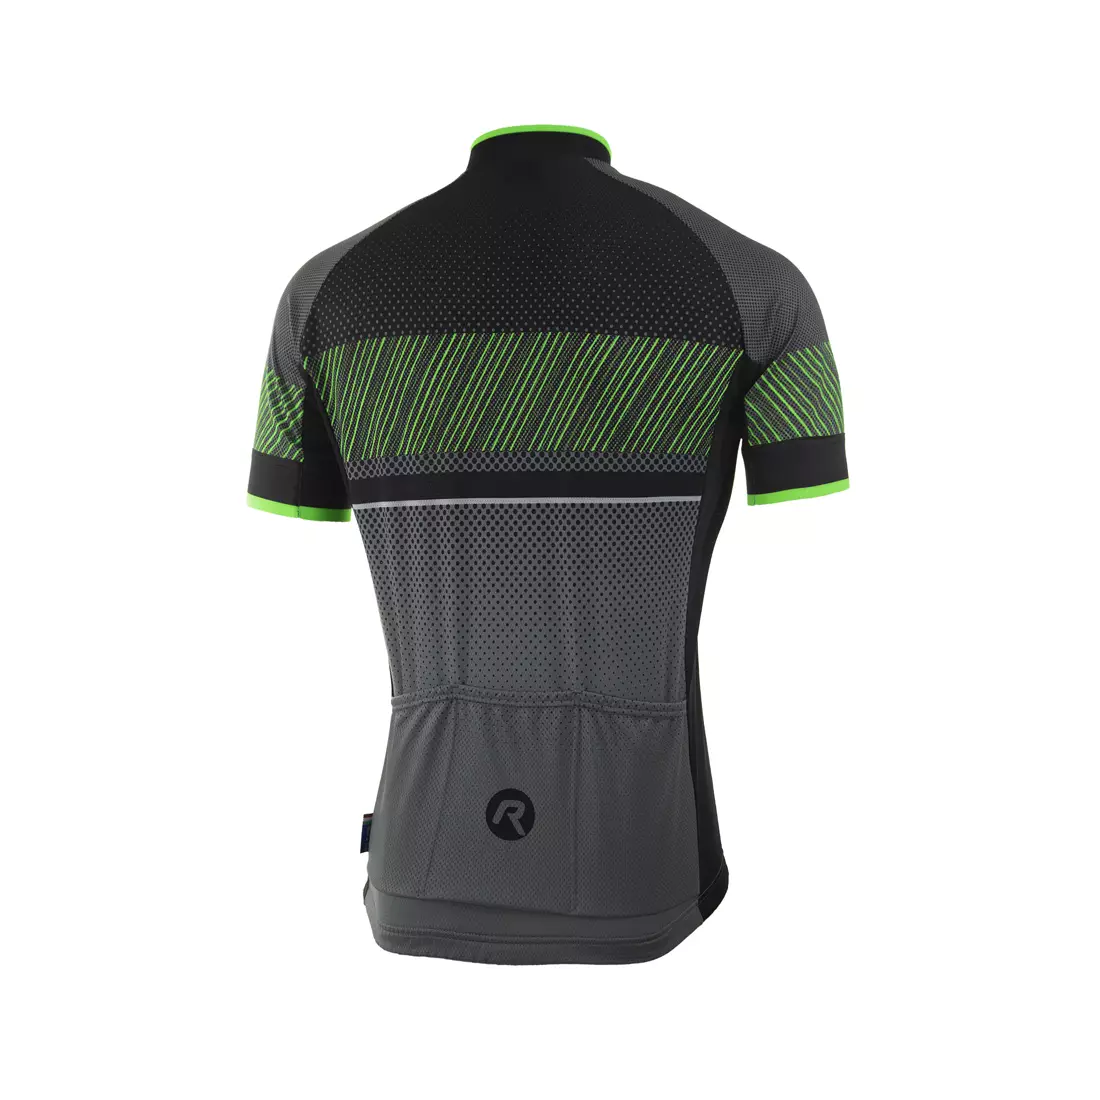 ROGELLI RITMO cyklistický dres, čierny a zelený